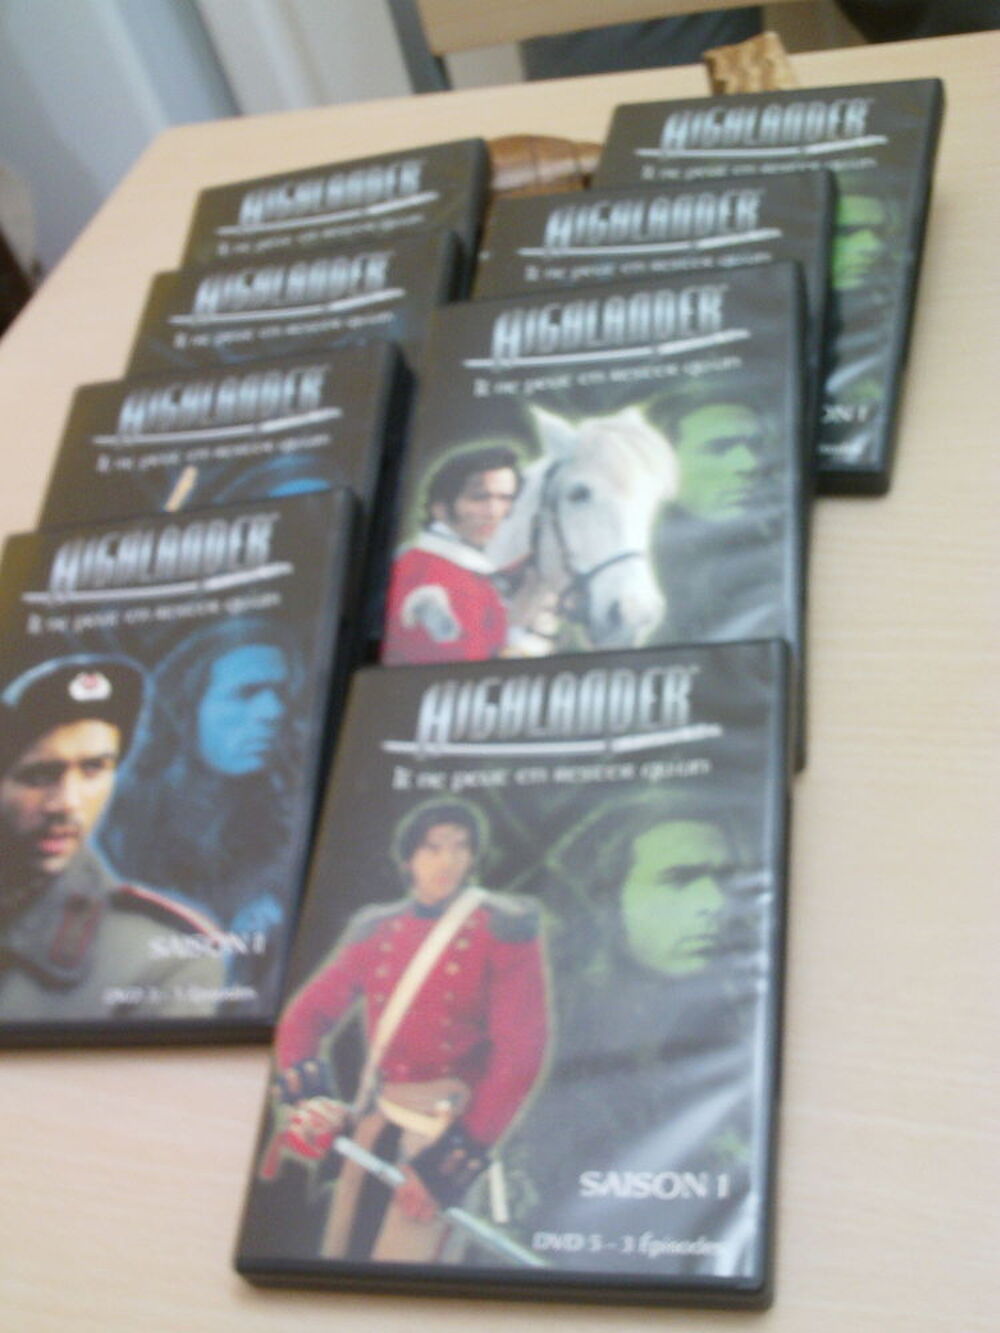  S&eacute;rie ancienne Highlander 2 coffrets de 4 DVD N&deg;977 